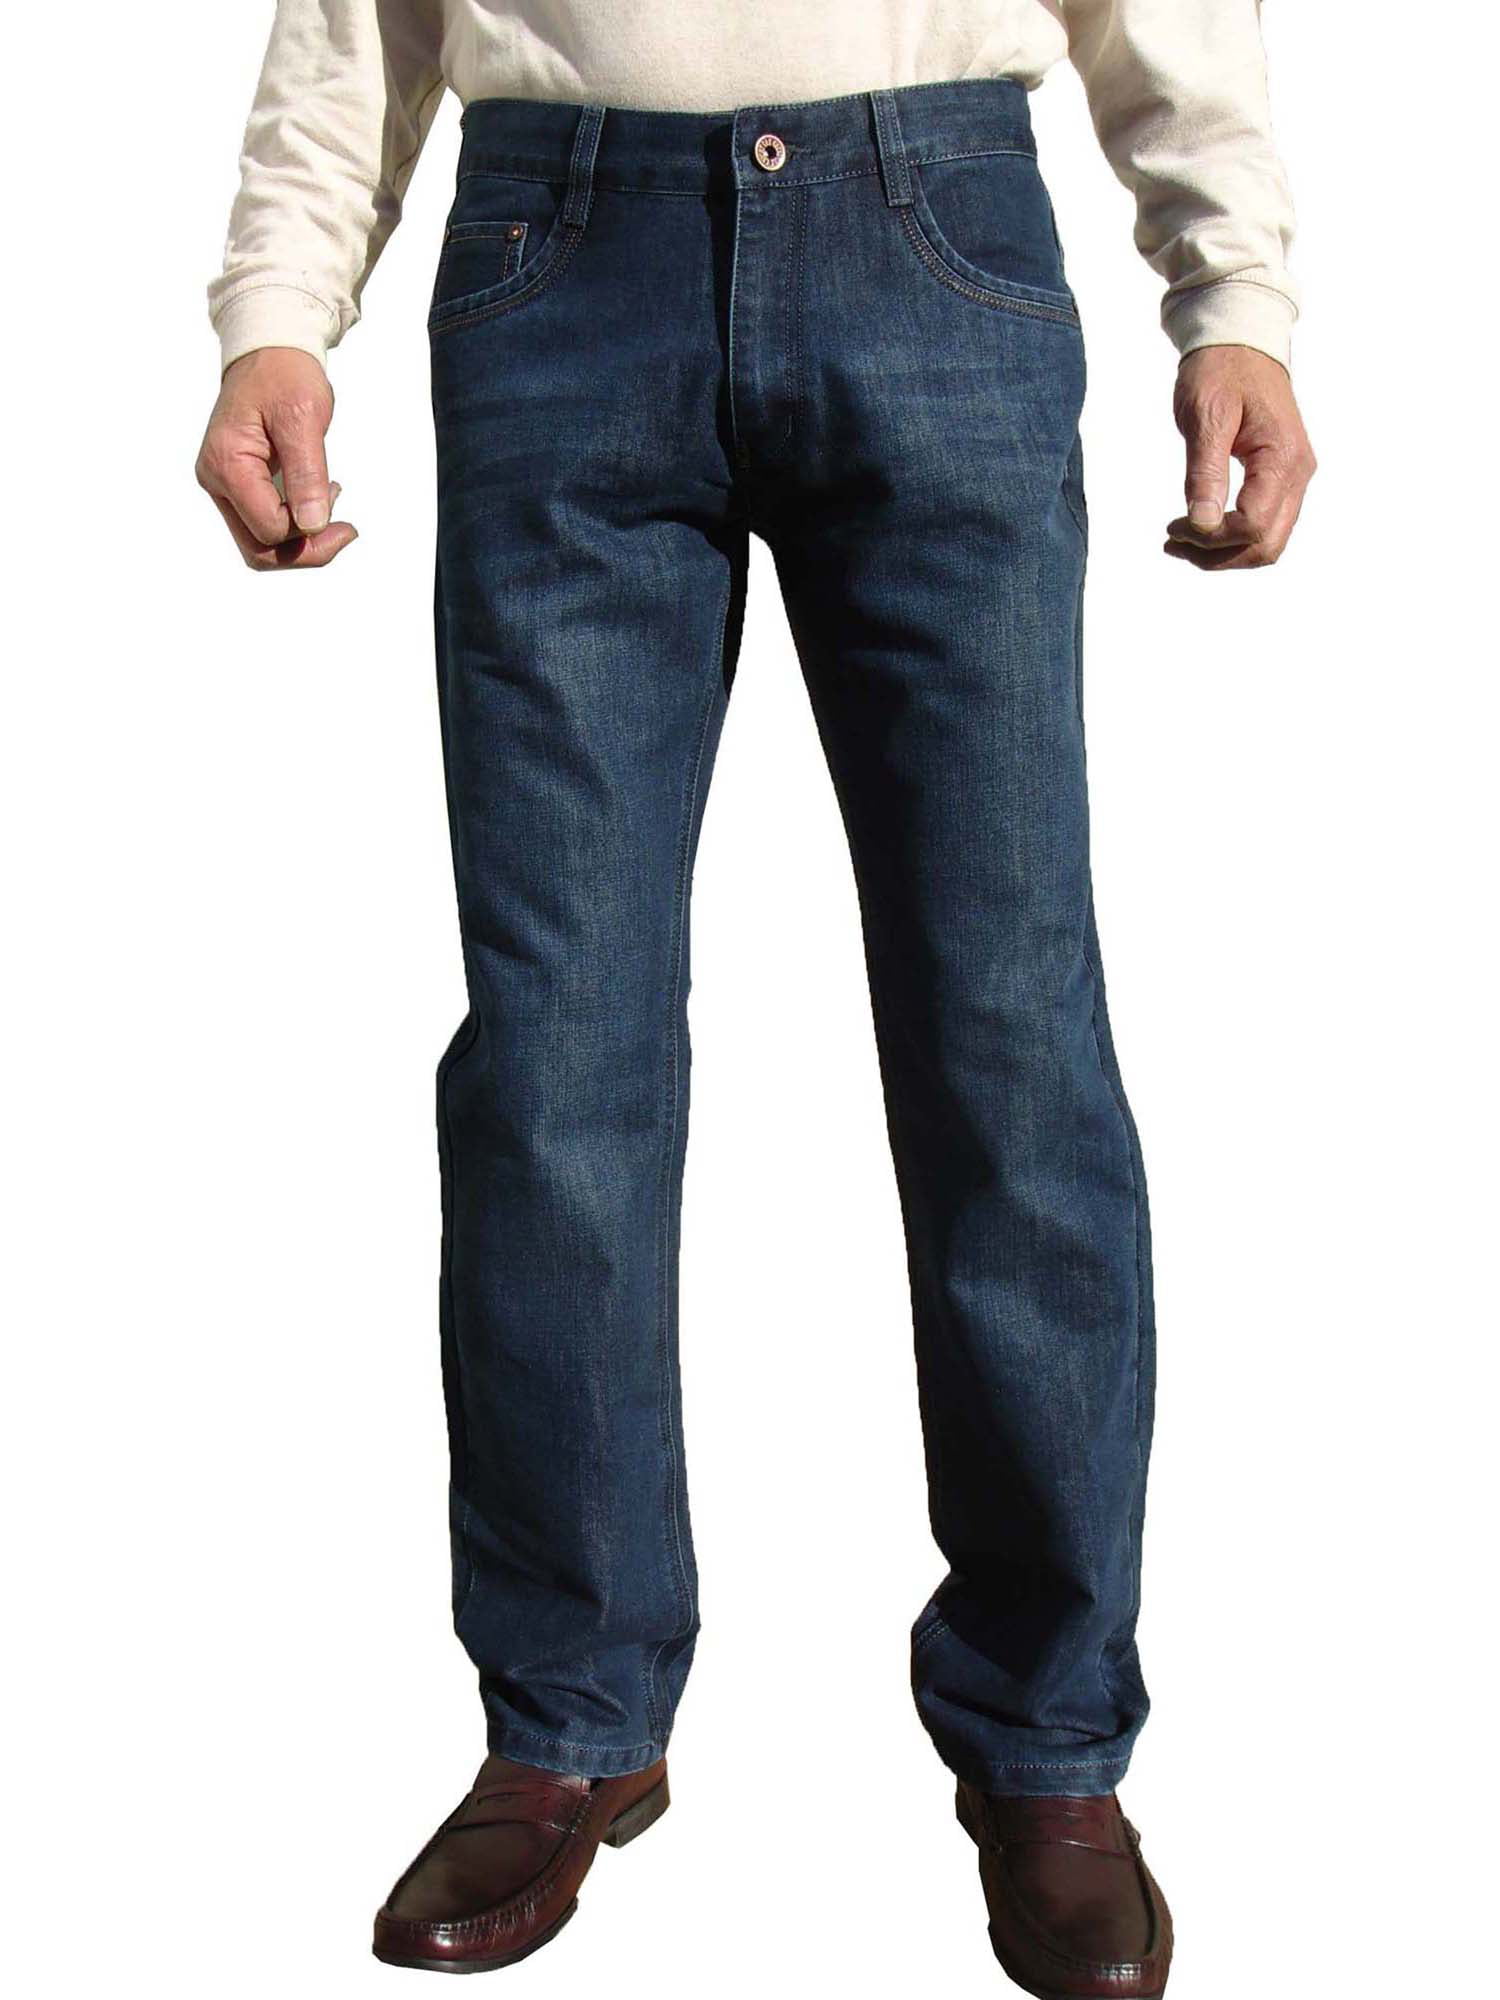 eksegese Sandet person Men's Regular Fit Jeans 1524 BU (32x30) - Walmart.com